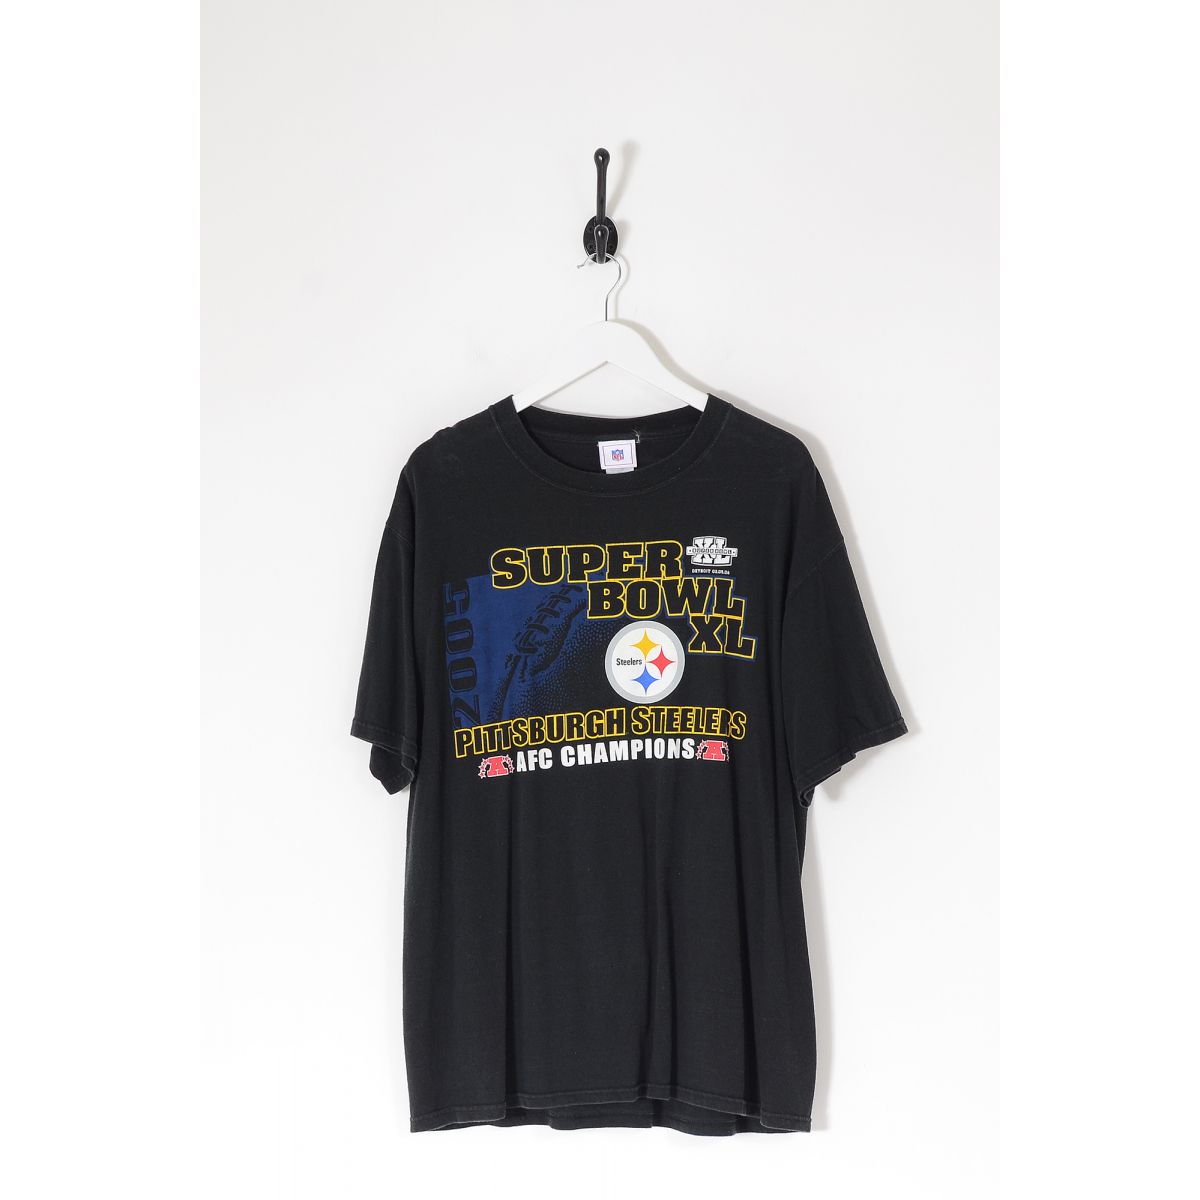 Vintage NFL Pittsburgh Steelers Super Bowl XL 2006 T-Shirt Black Large